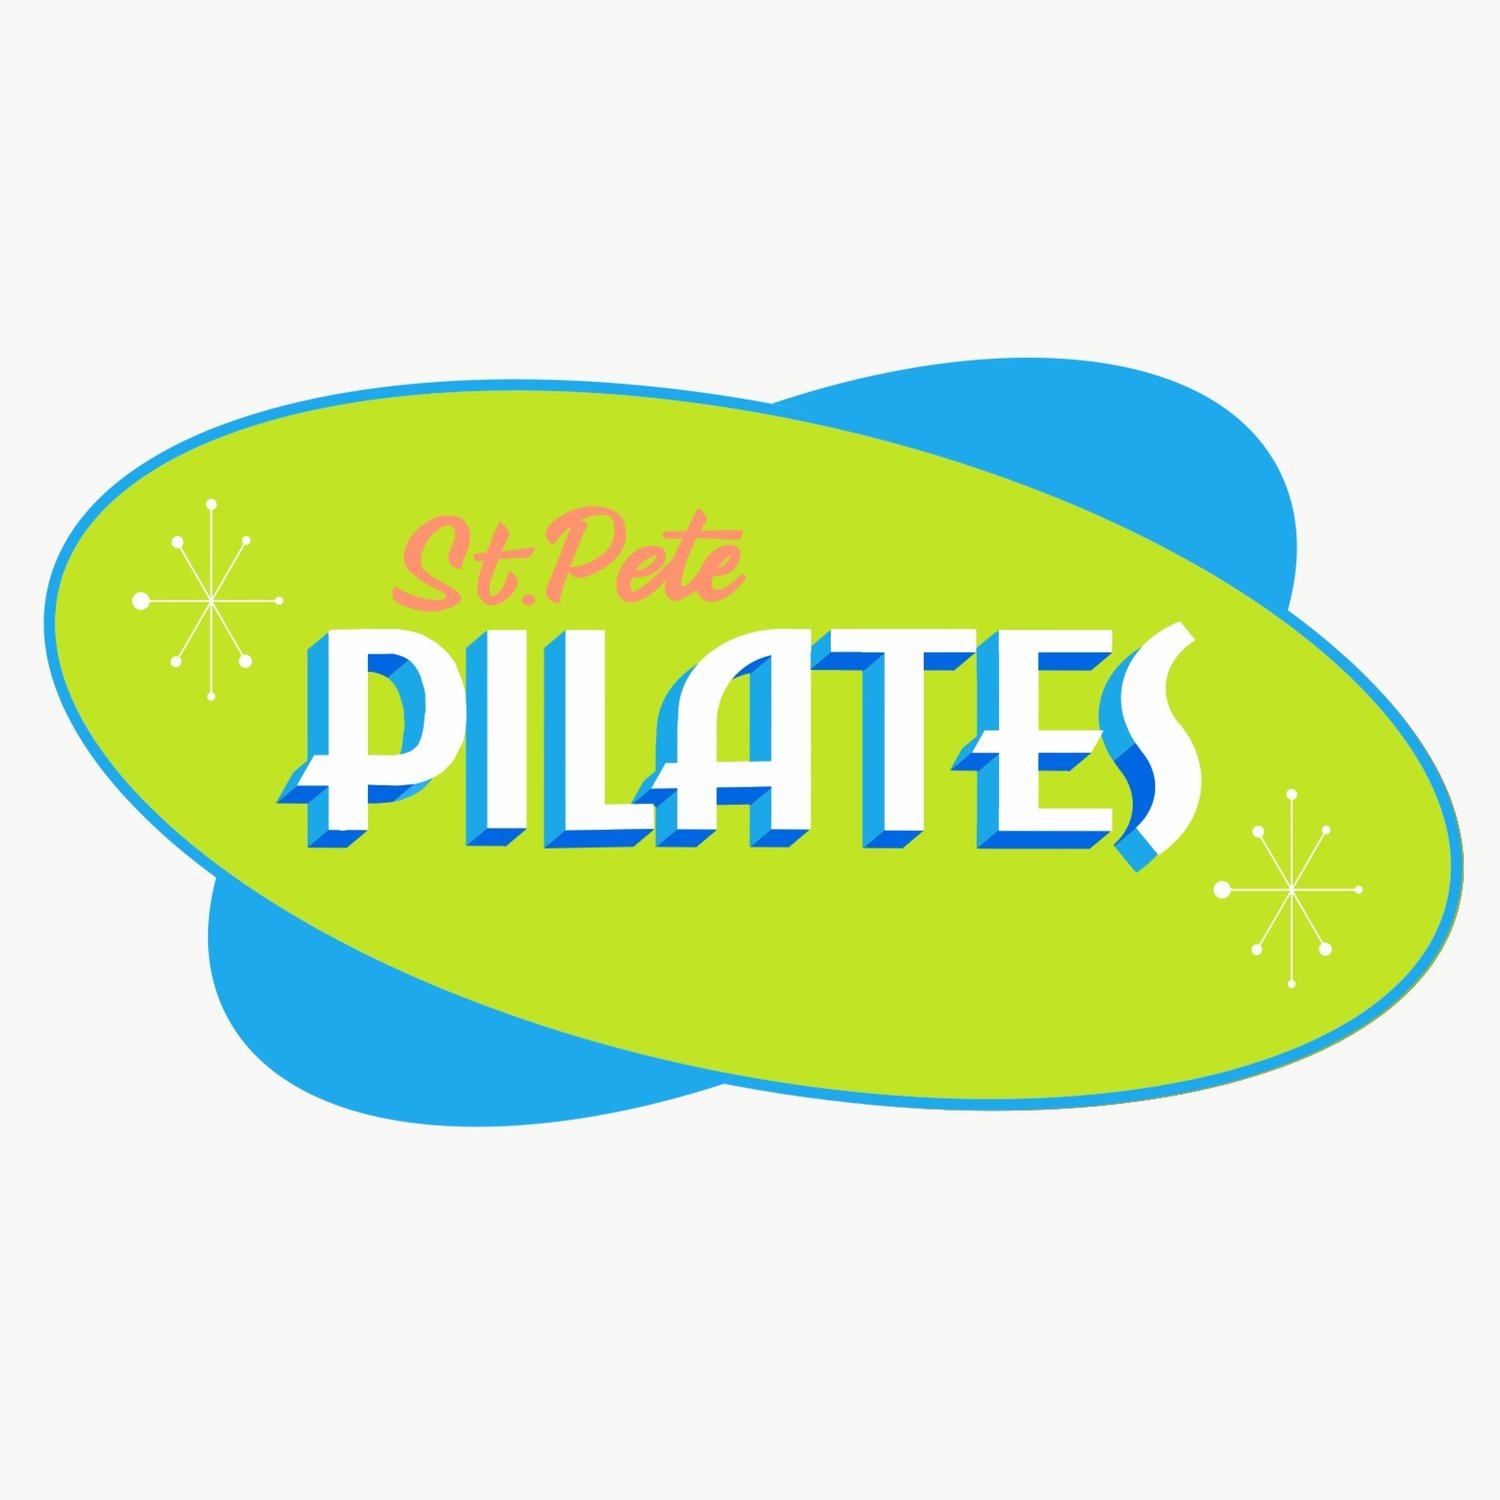 St. Pete Pilates